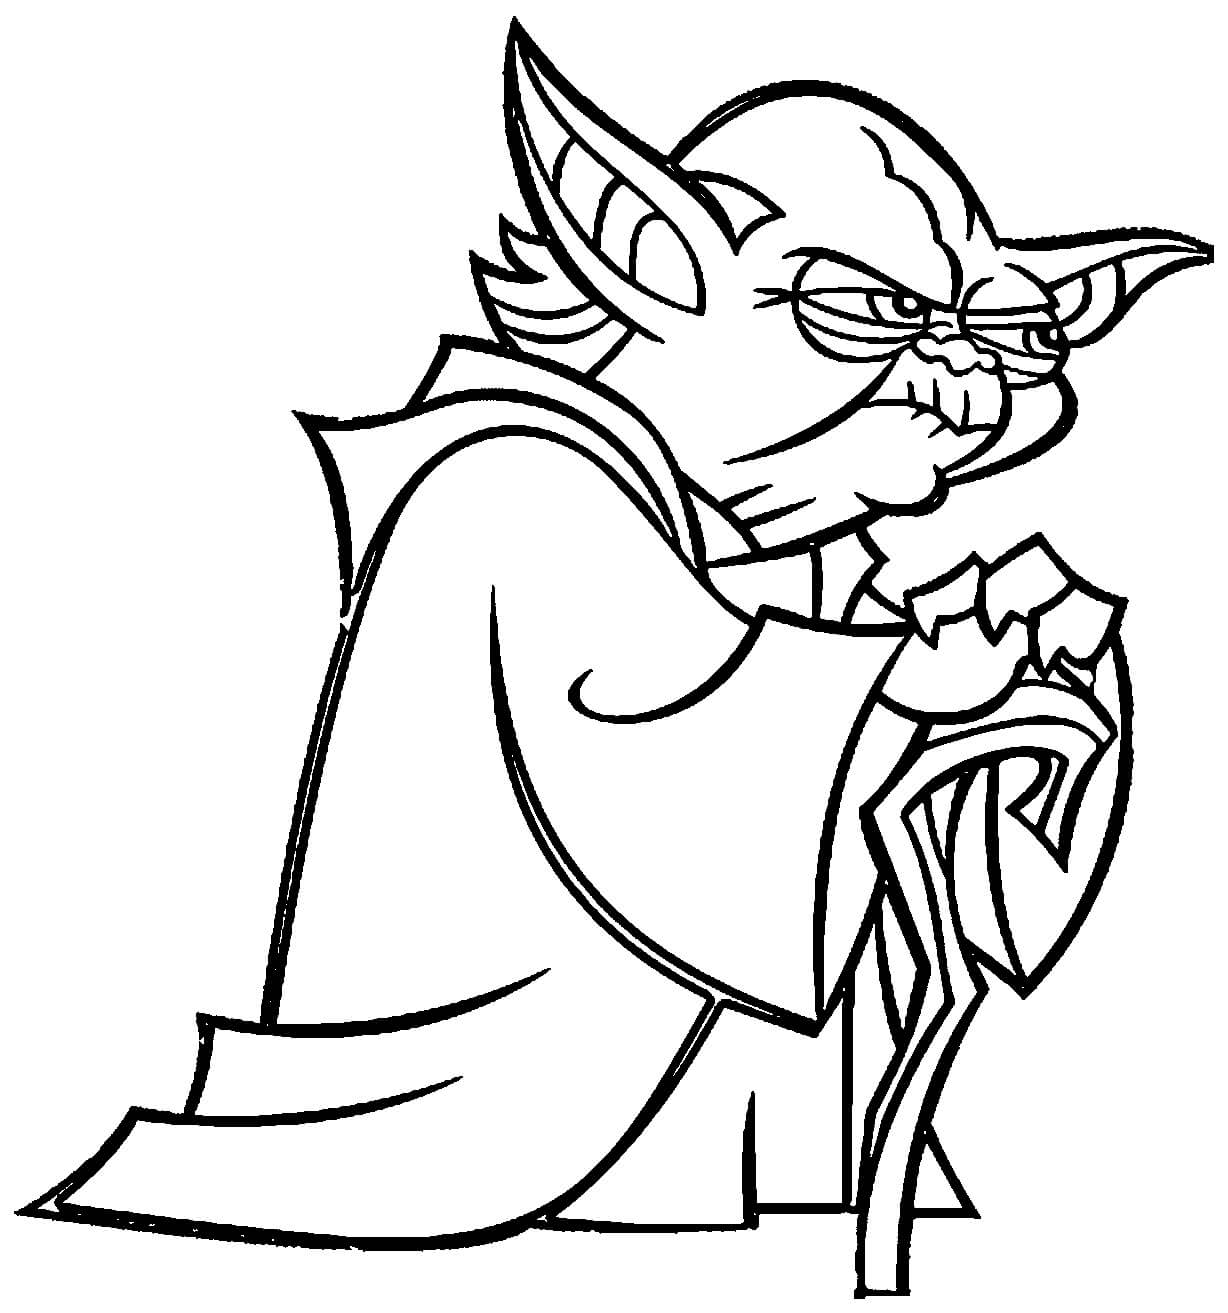 Funny Master Yoda